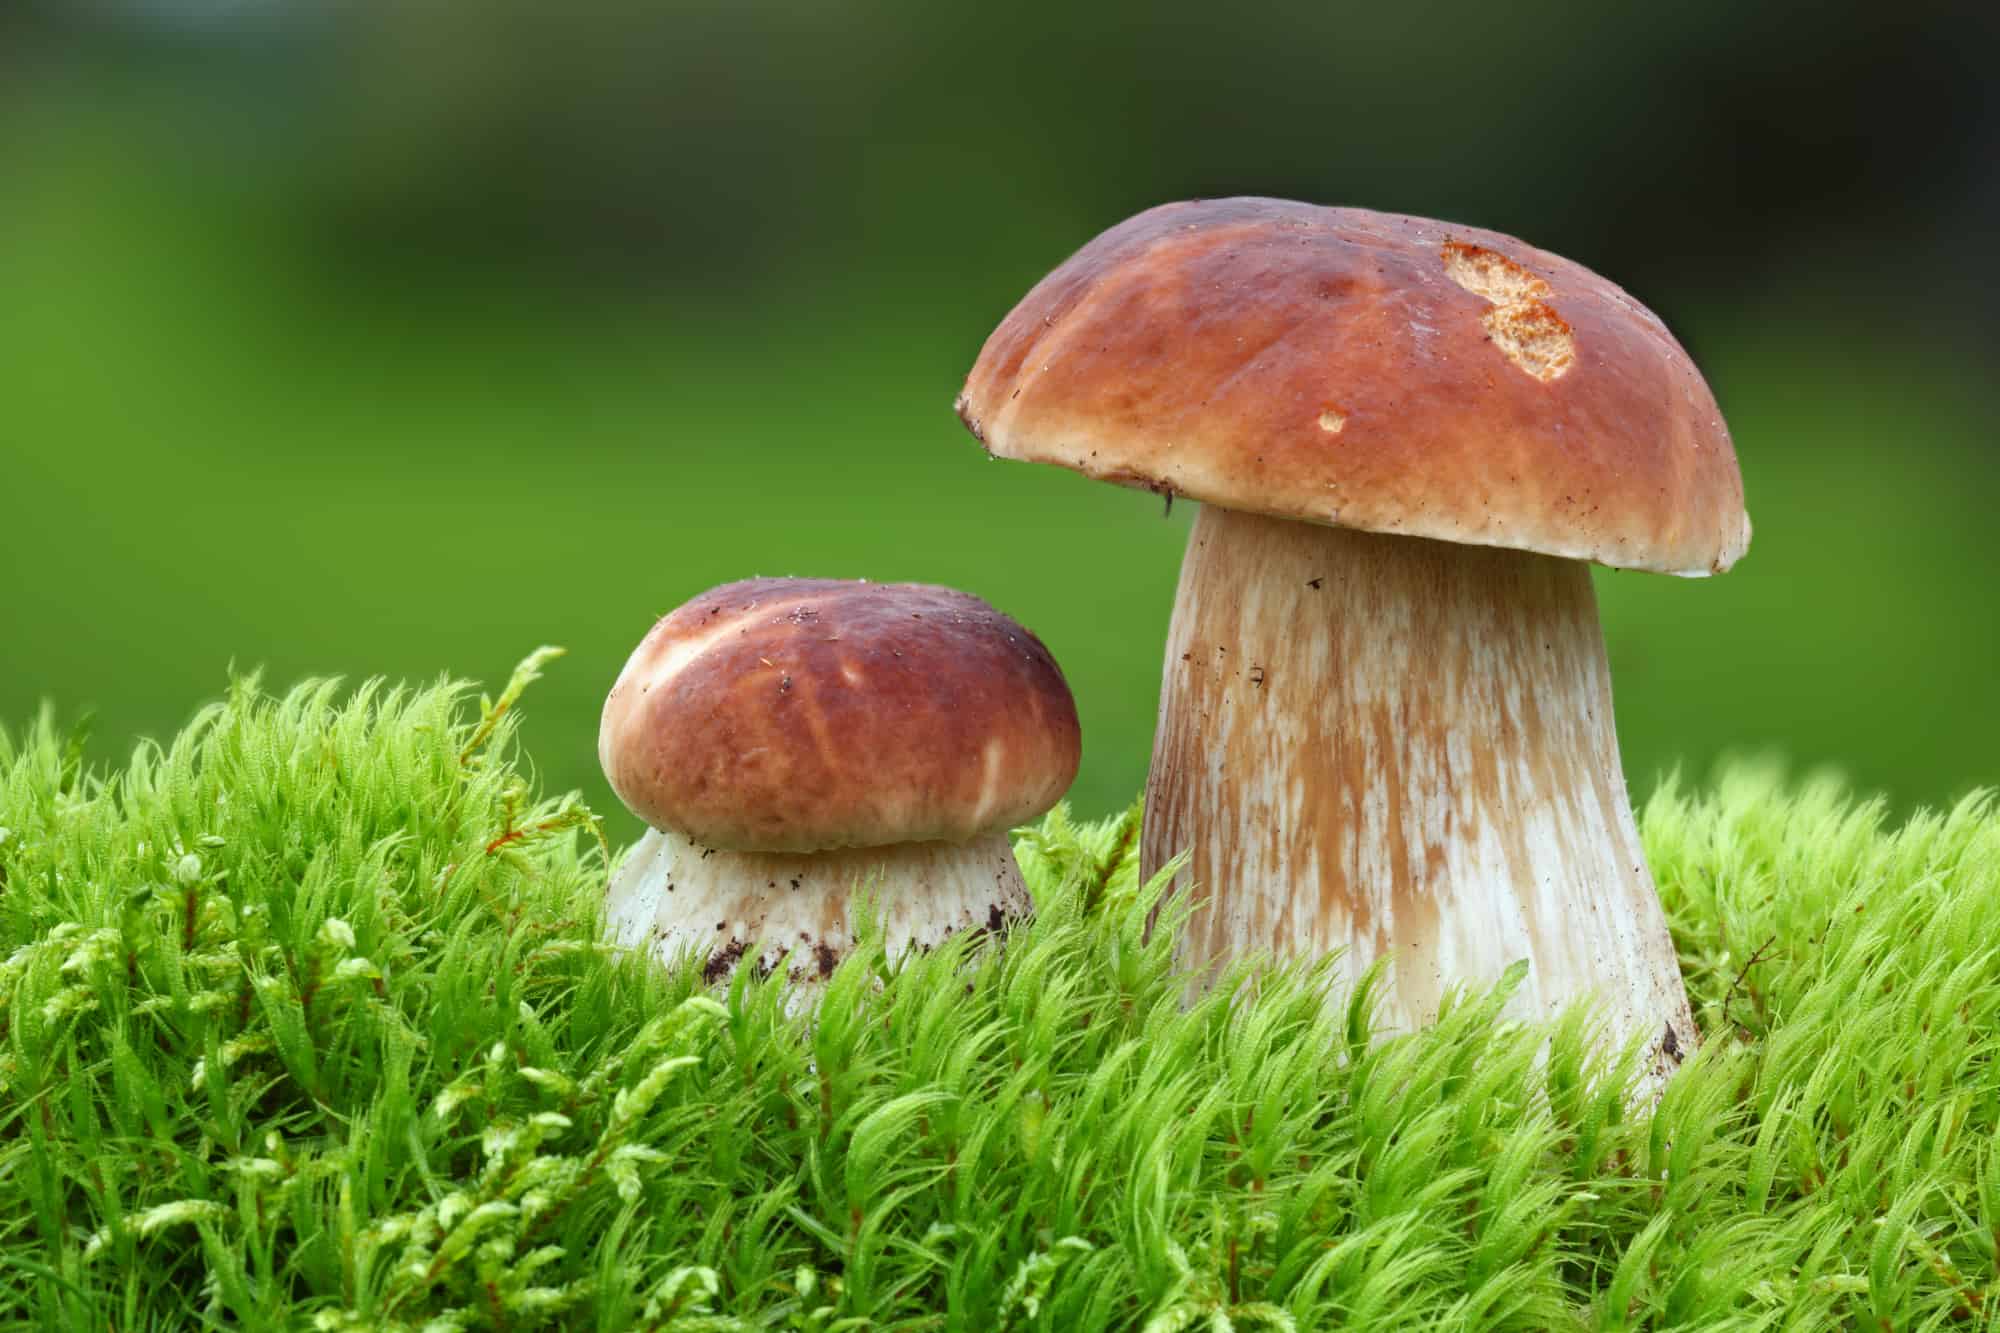 Two Oak Mushrooms in the moss